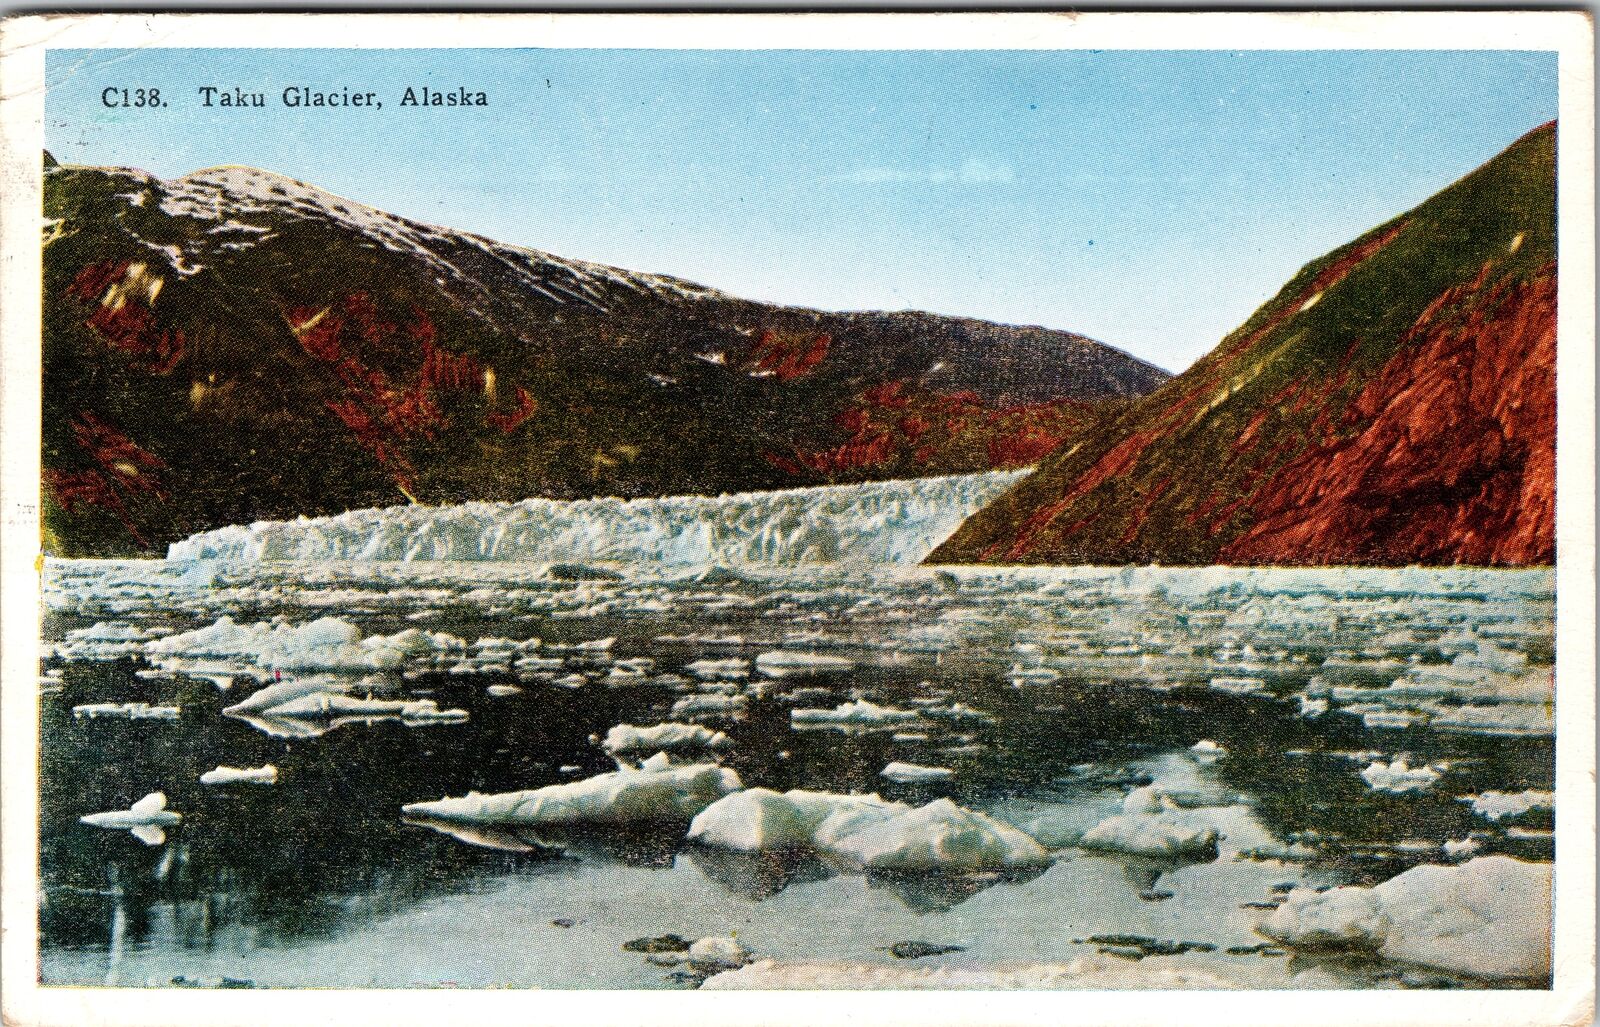 AK-Alaska, Scenic, Taku Glacier, Mountains, Icey Waters, Vintage Postcard